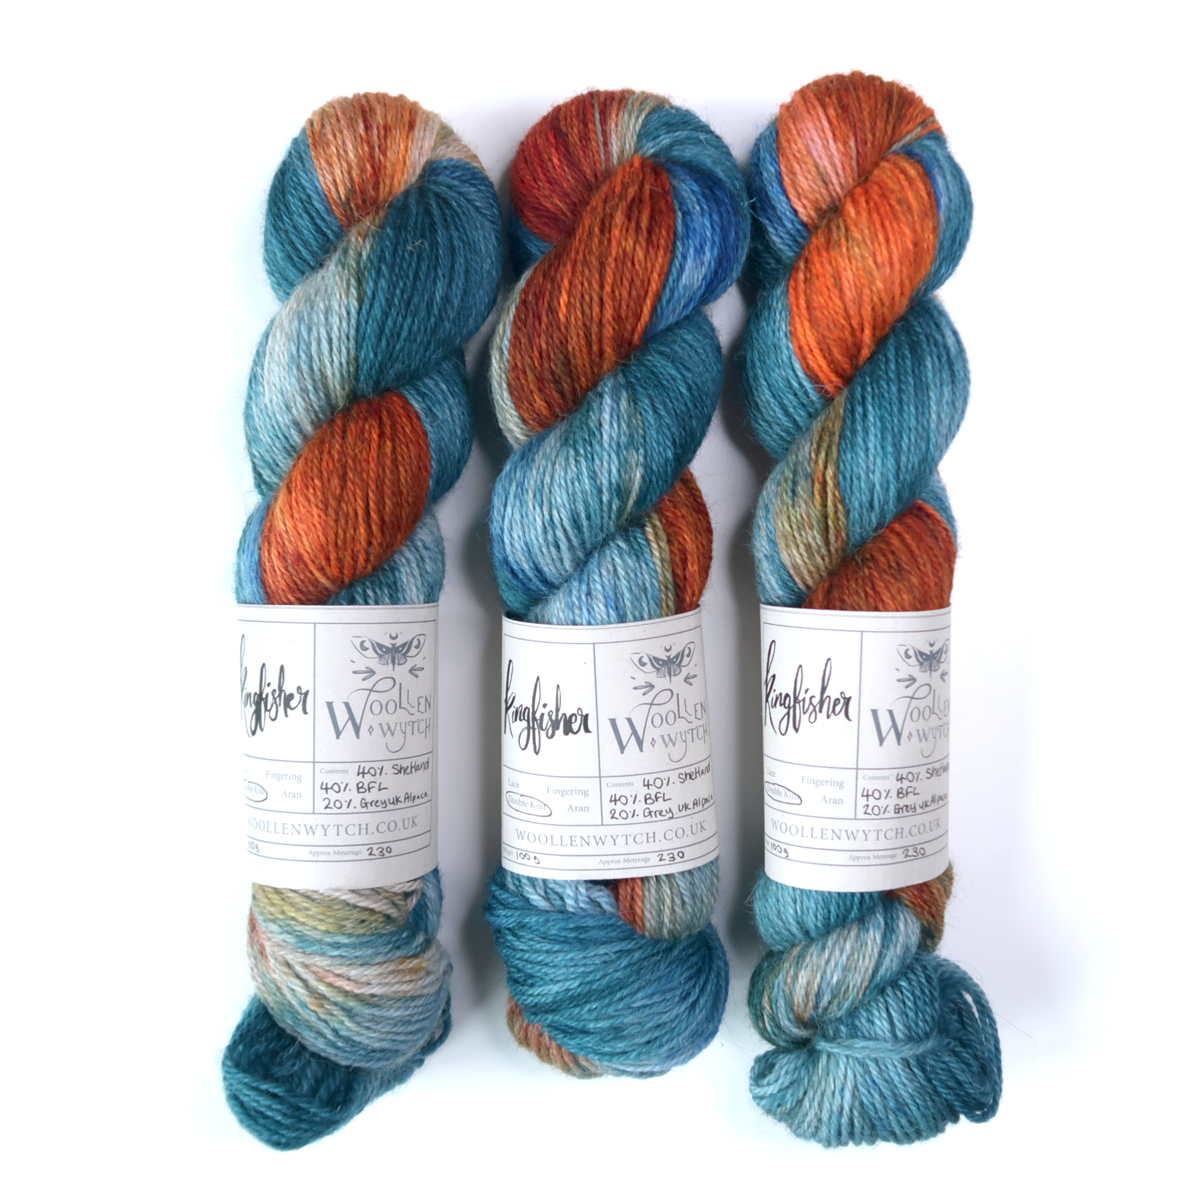 Orange and blue yarn kingfisher inspired shetland woollen wytch british yarn